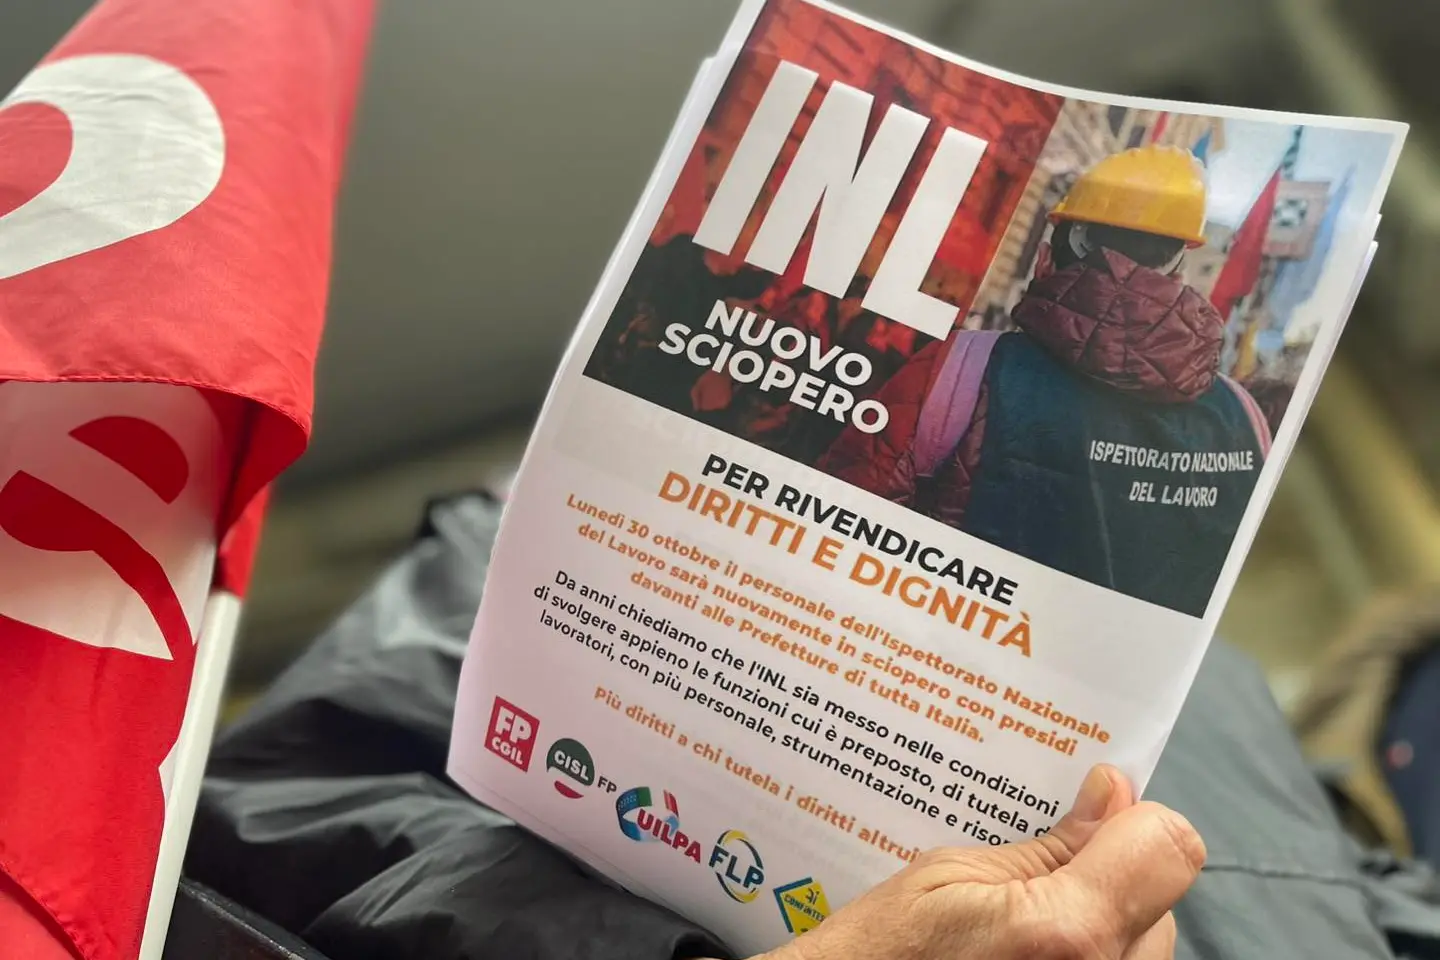 Lavoro: Landini, sostegno a sciopero dipendenti INL